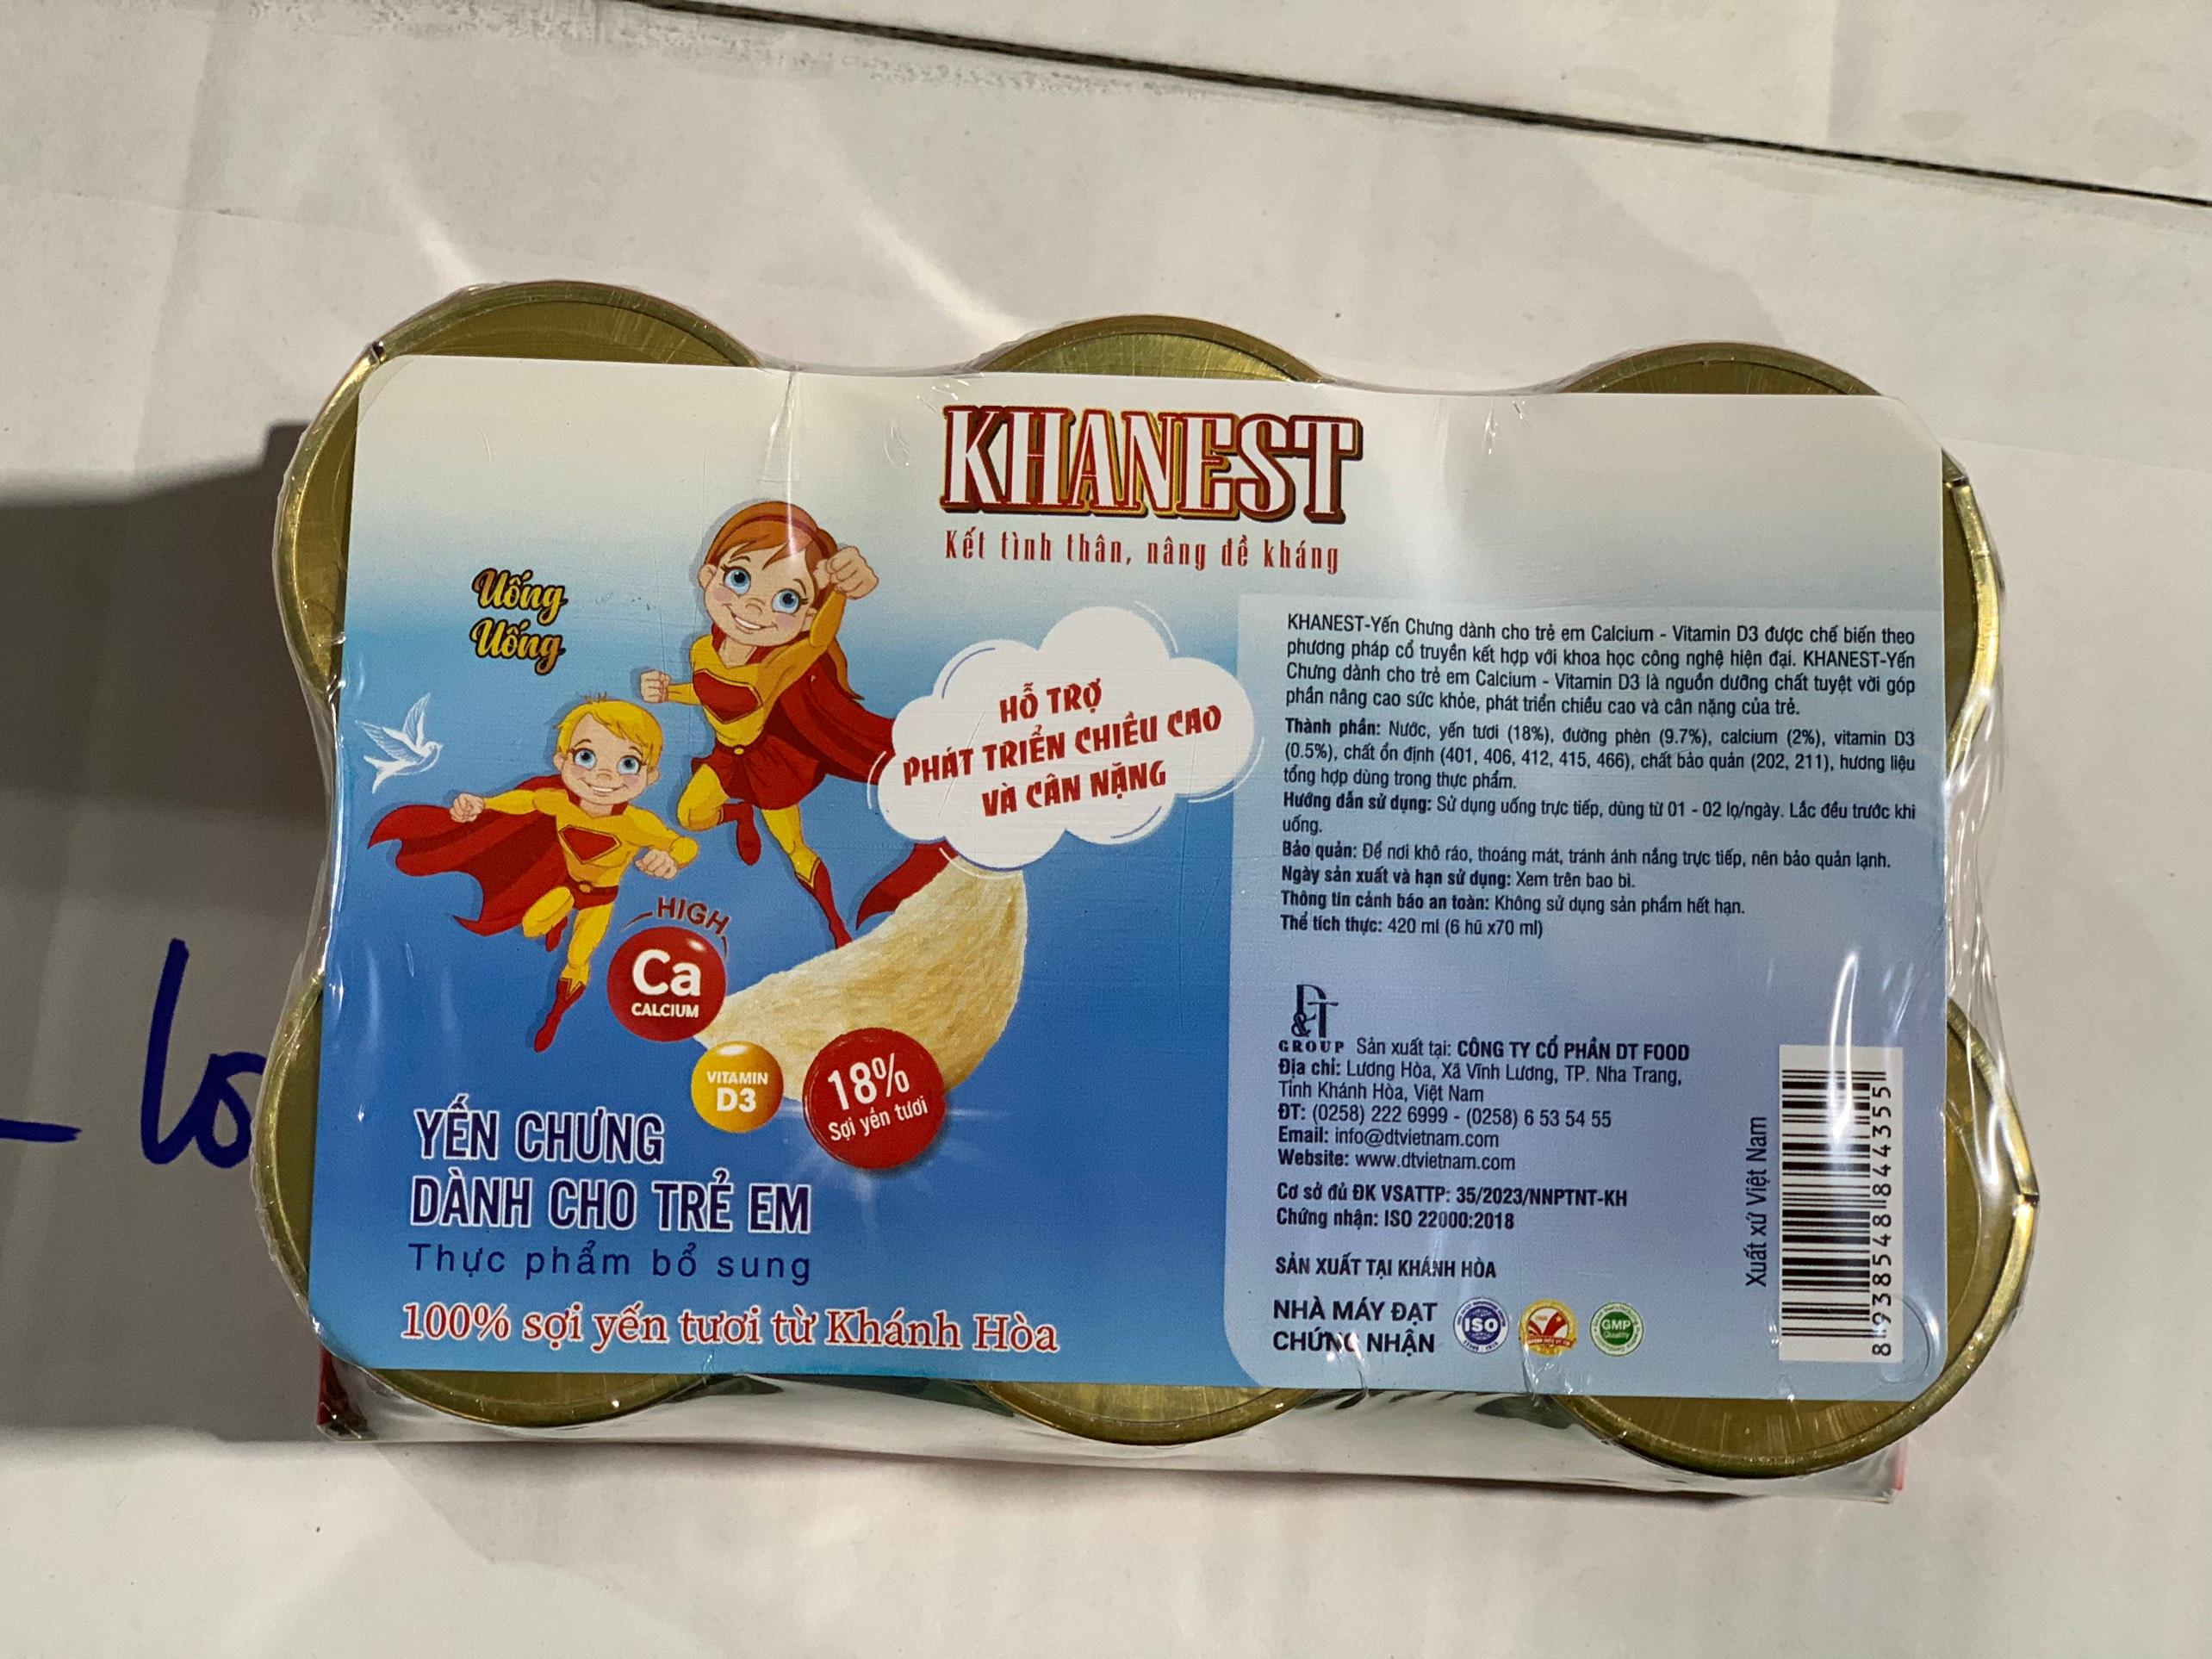 Đặc sản Khánh Hòa -  KhaNest Khay màng co yến chưng dành cho trẻ em Canxi + VitaminD3 DT NEST/ DT FOOD - OCOP 4 SAO